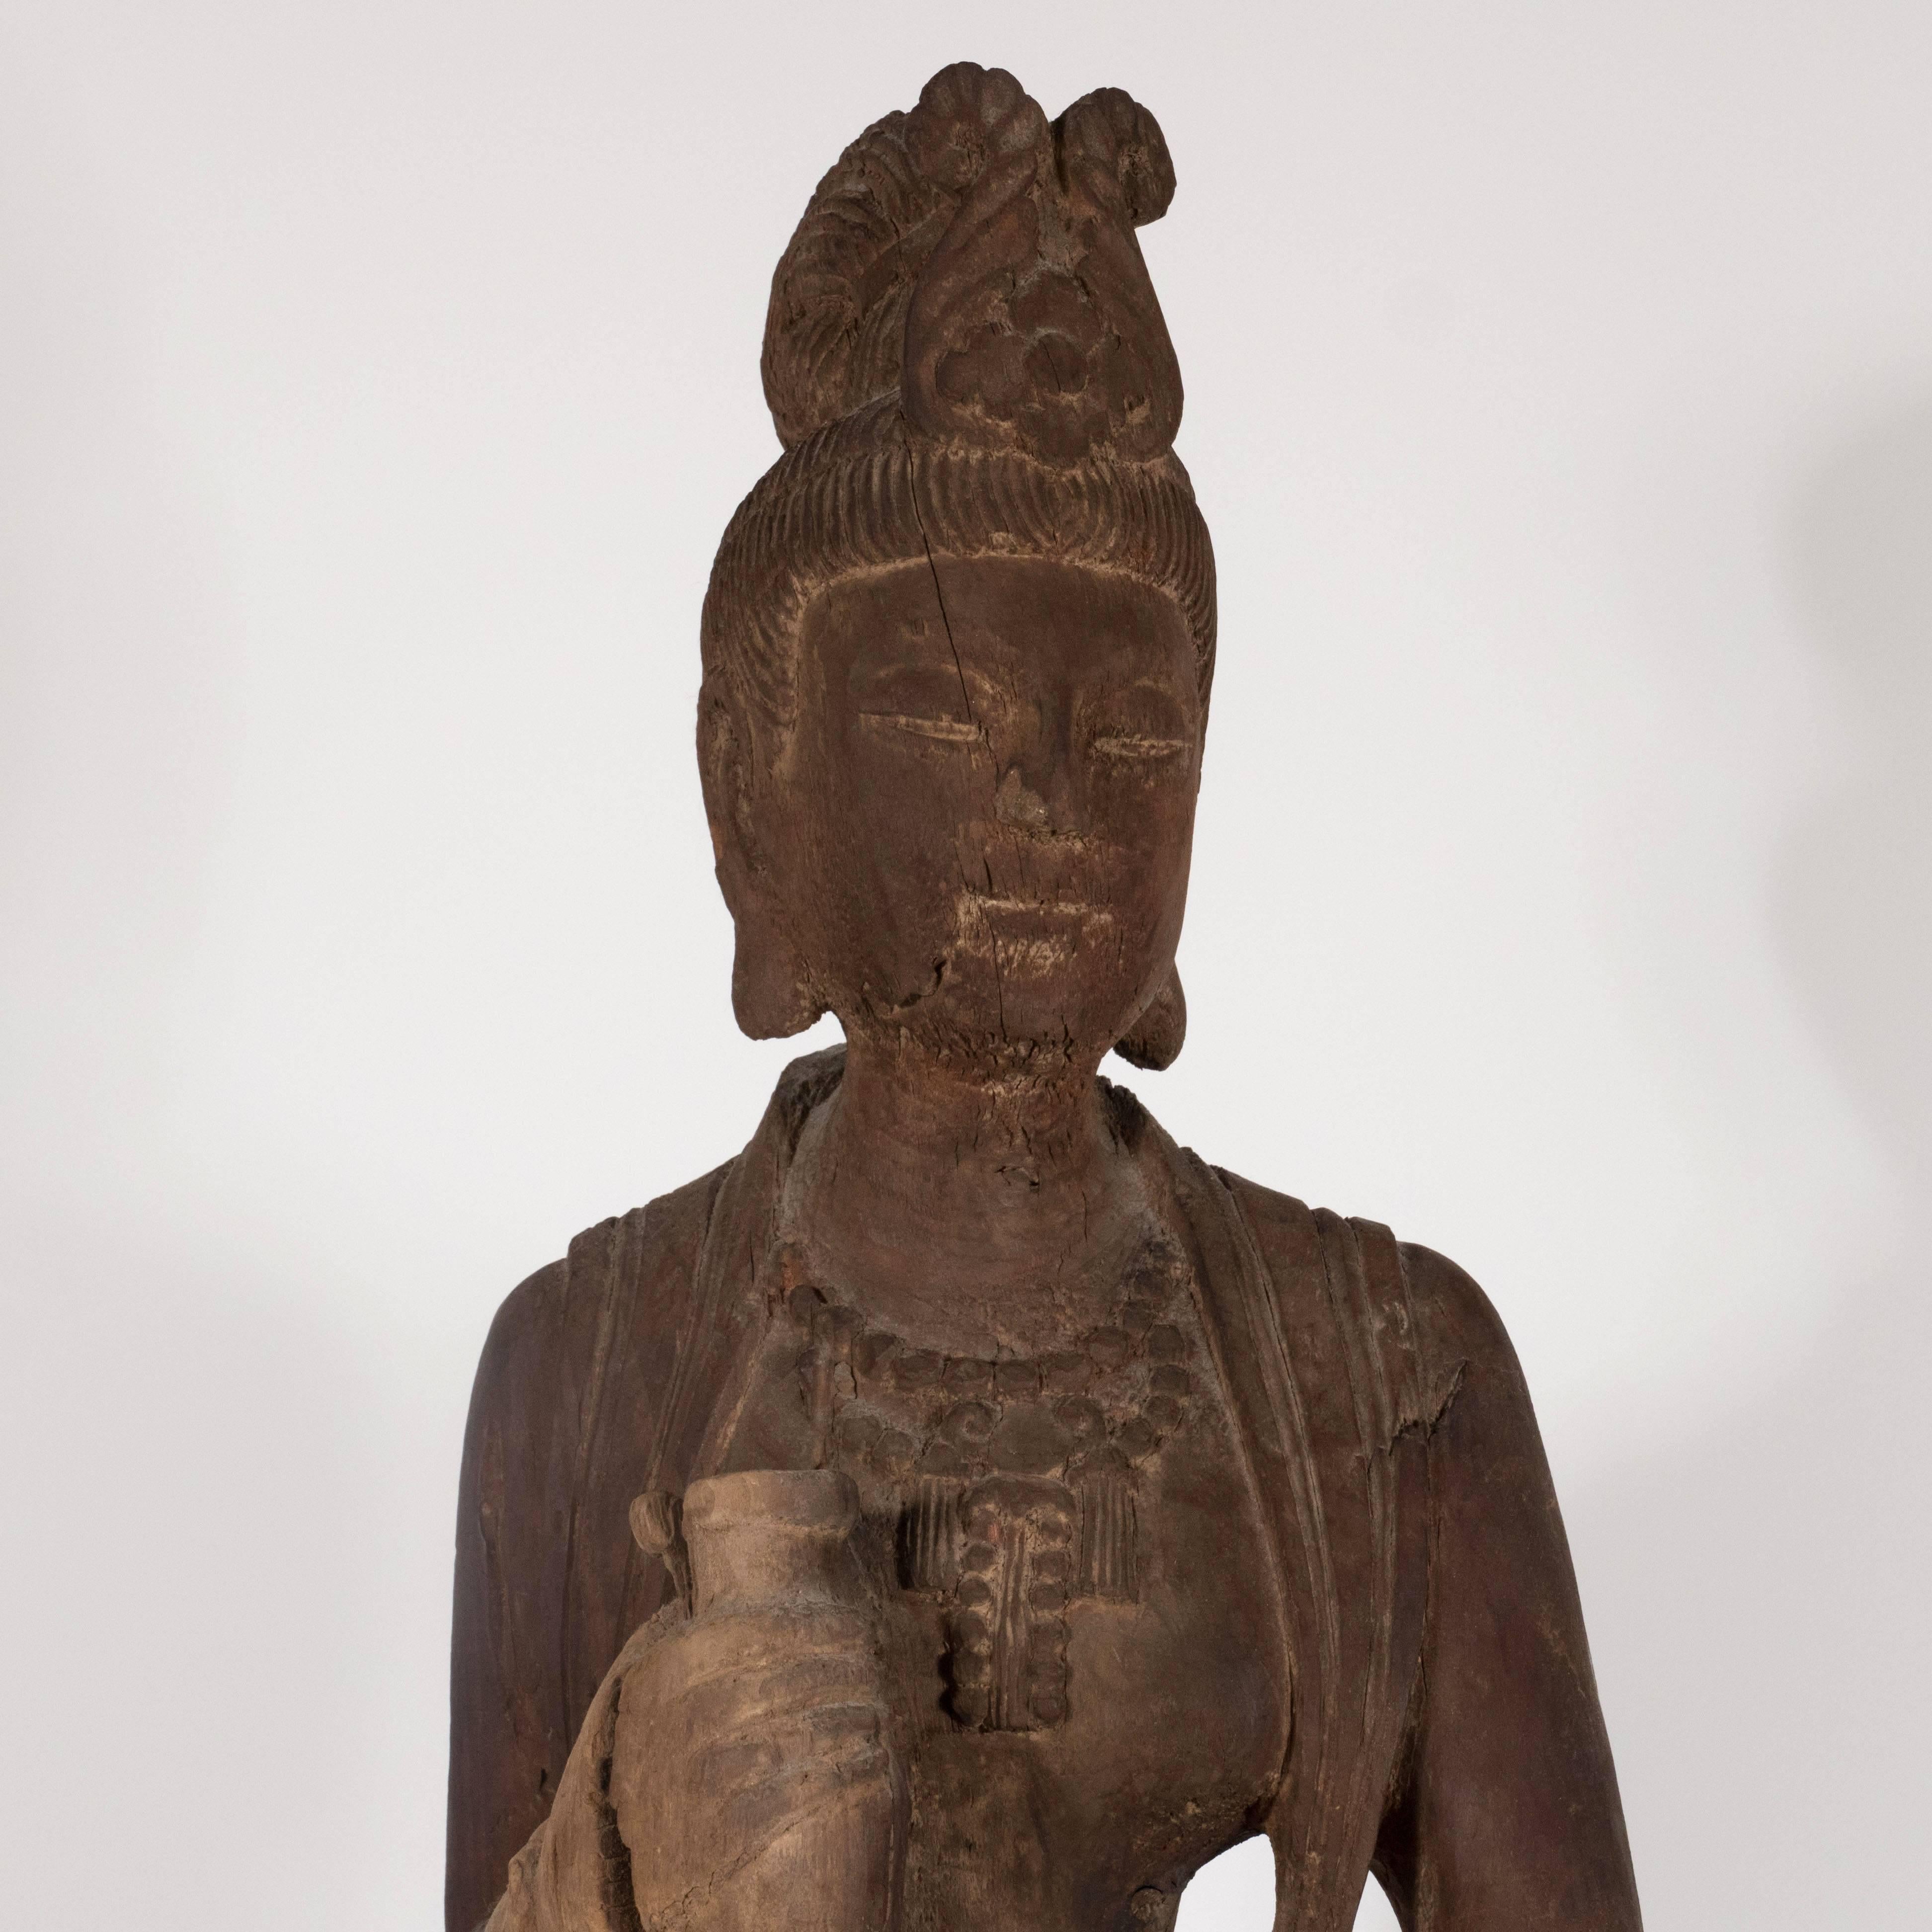 Cette belle sculpture réalisée en Chine au XVIIIe siècle représente Guanyin, un bodhisattva associé à la compassion. La forme féminine tient un pot dans ses mains. Elle apparaît drapée dans une longue robe fluide avec une tiare - les nombreux